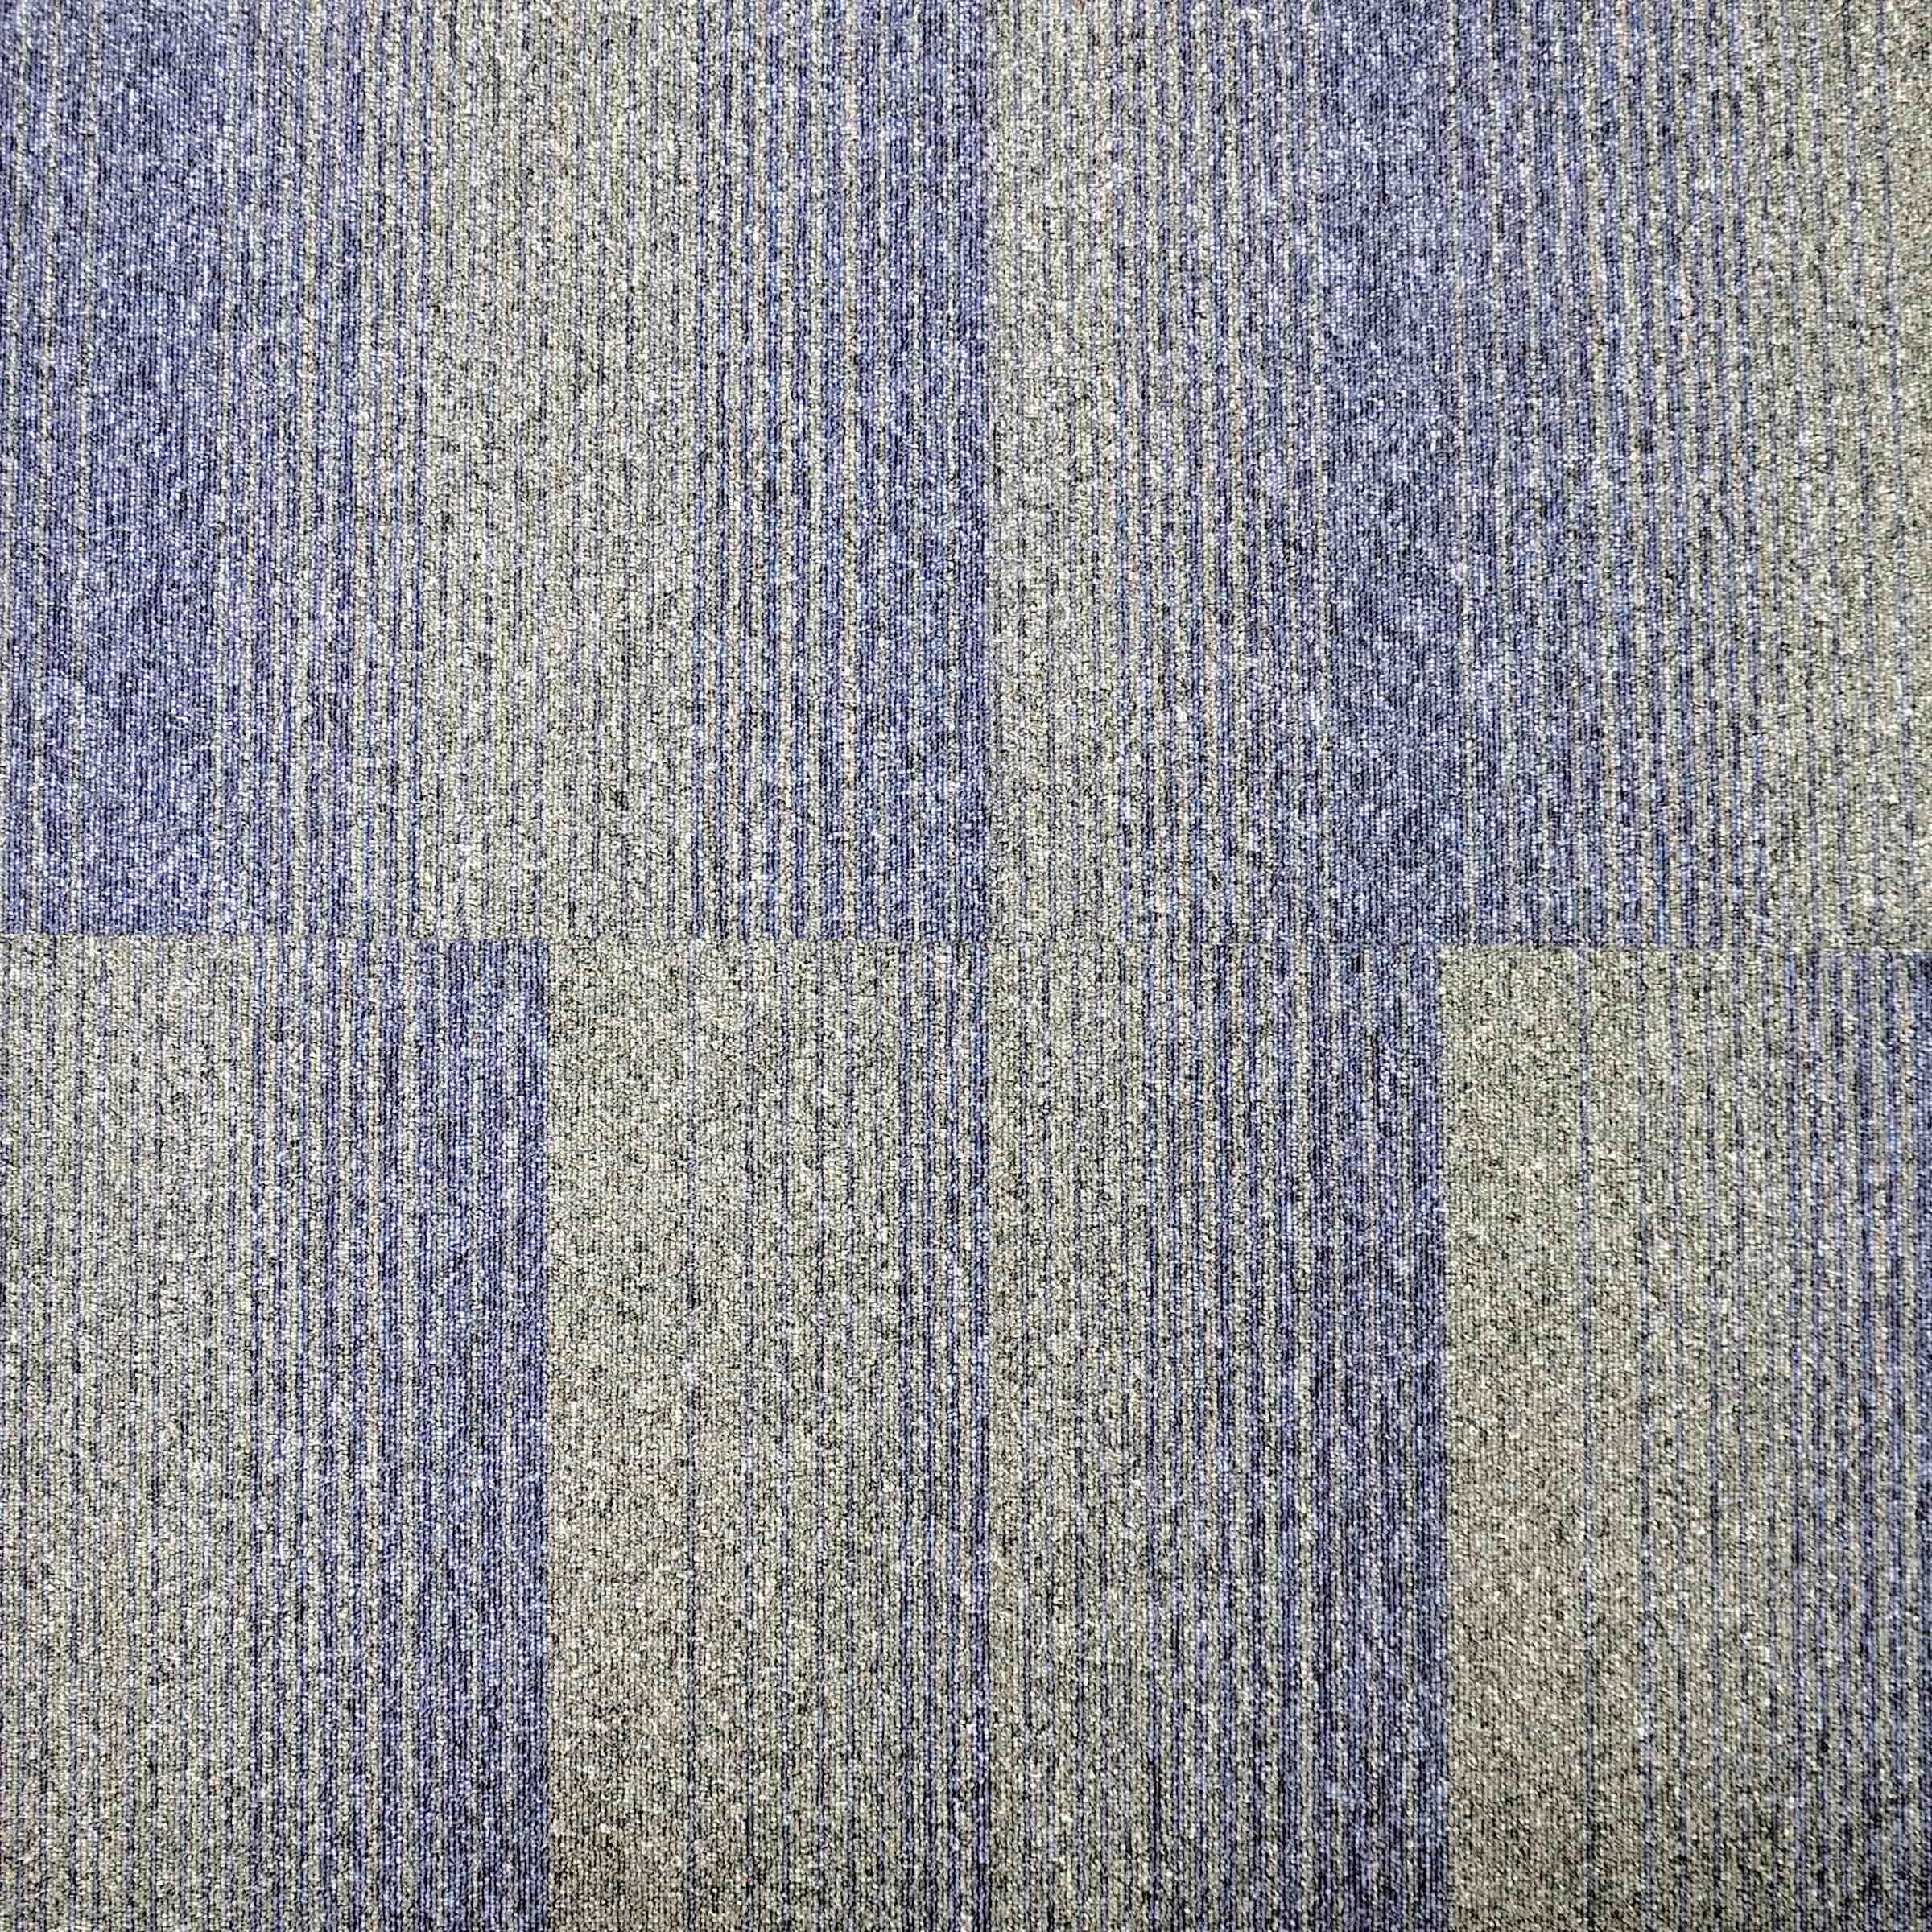 Diversity Groove | Jaxx | Paragon Carpet Tiles | Commercial Carpet Tiles